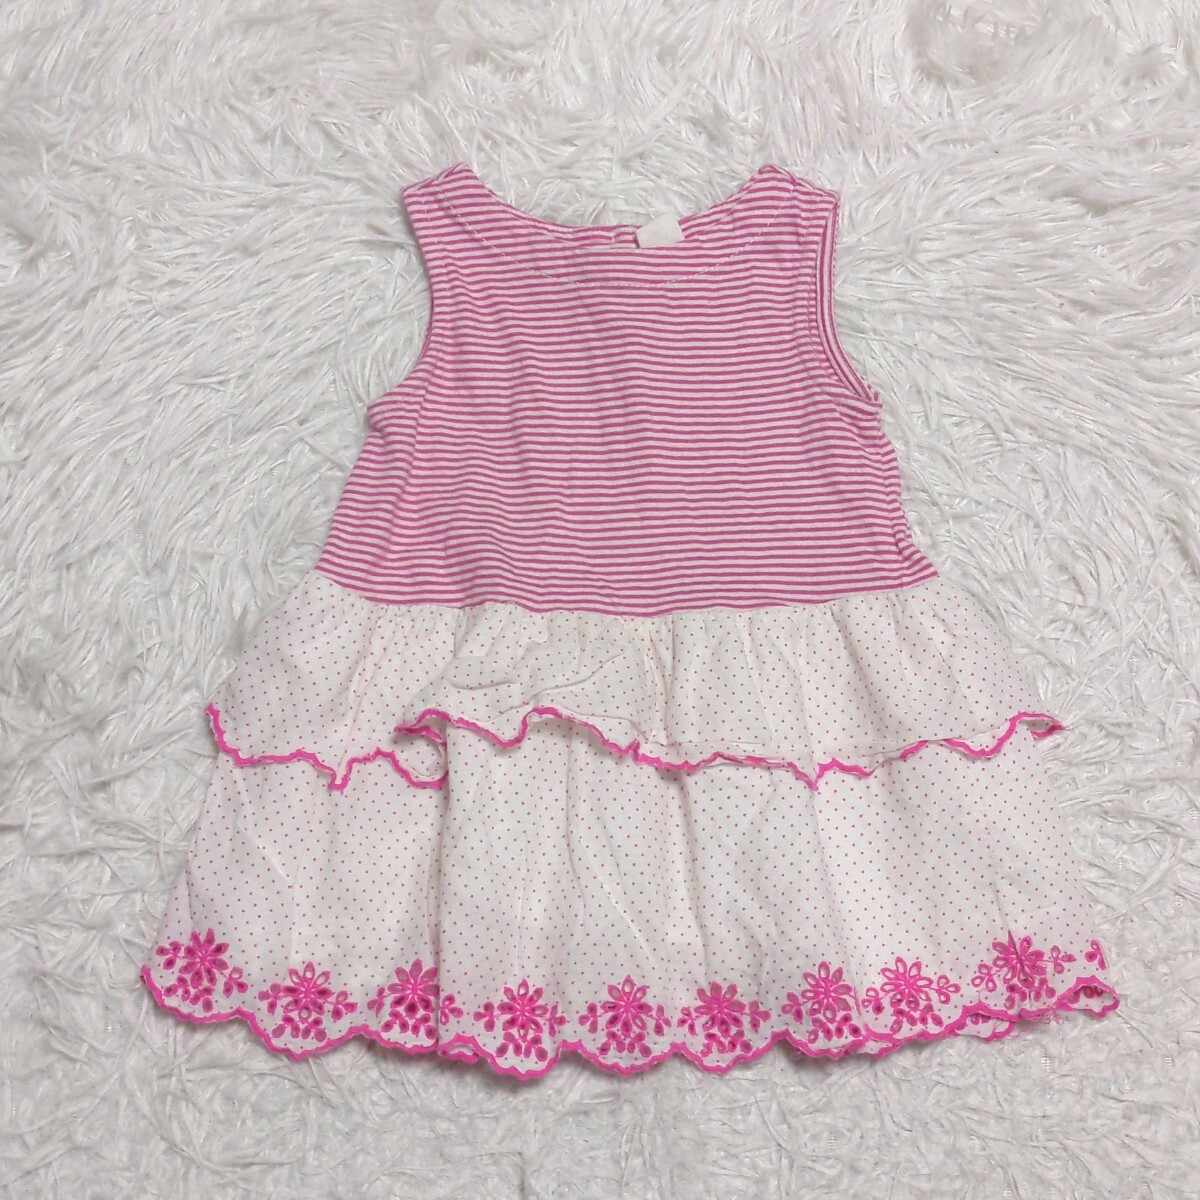 【送料無料】babygap ベビーギャップ ノースリーブ ワンピース 80cm ピンク ベビー 子供服の画像1